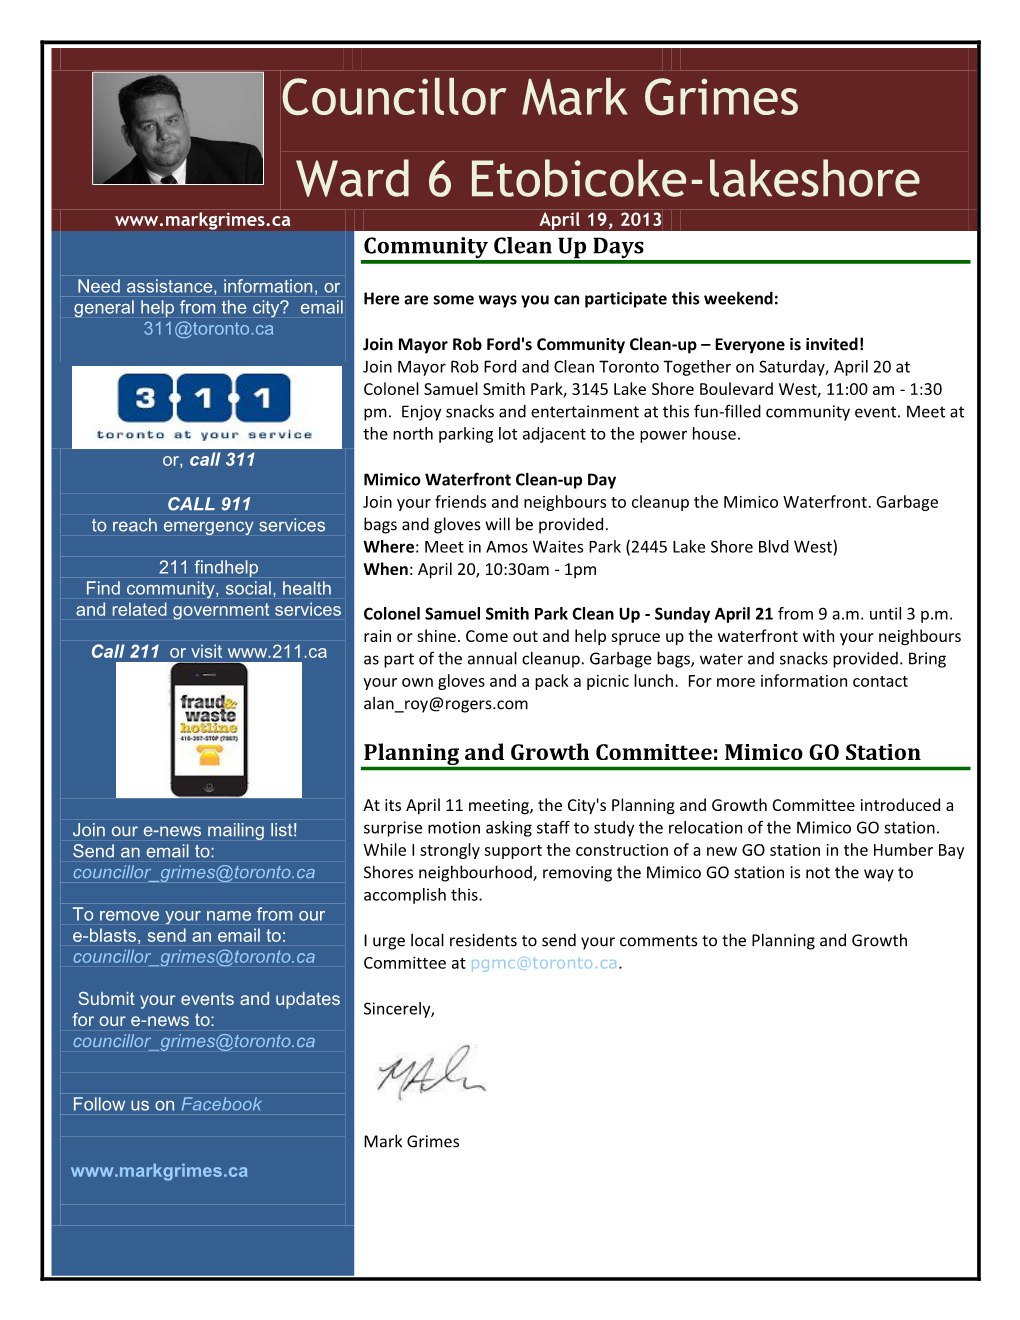 Councillor Mark Grimes Ward 6 Etobicoke-Lakeshore April 19, 2013 Community Clean up Days